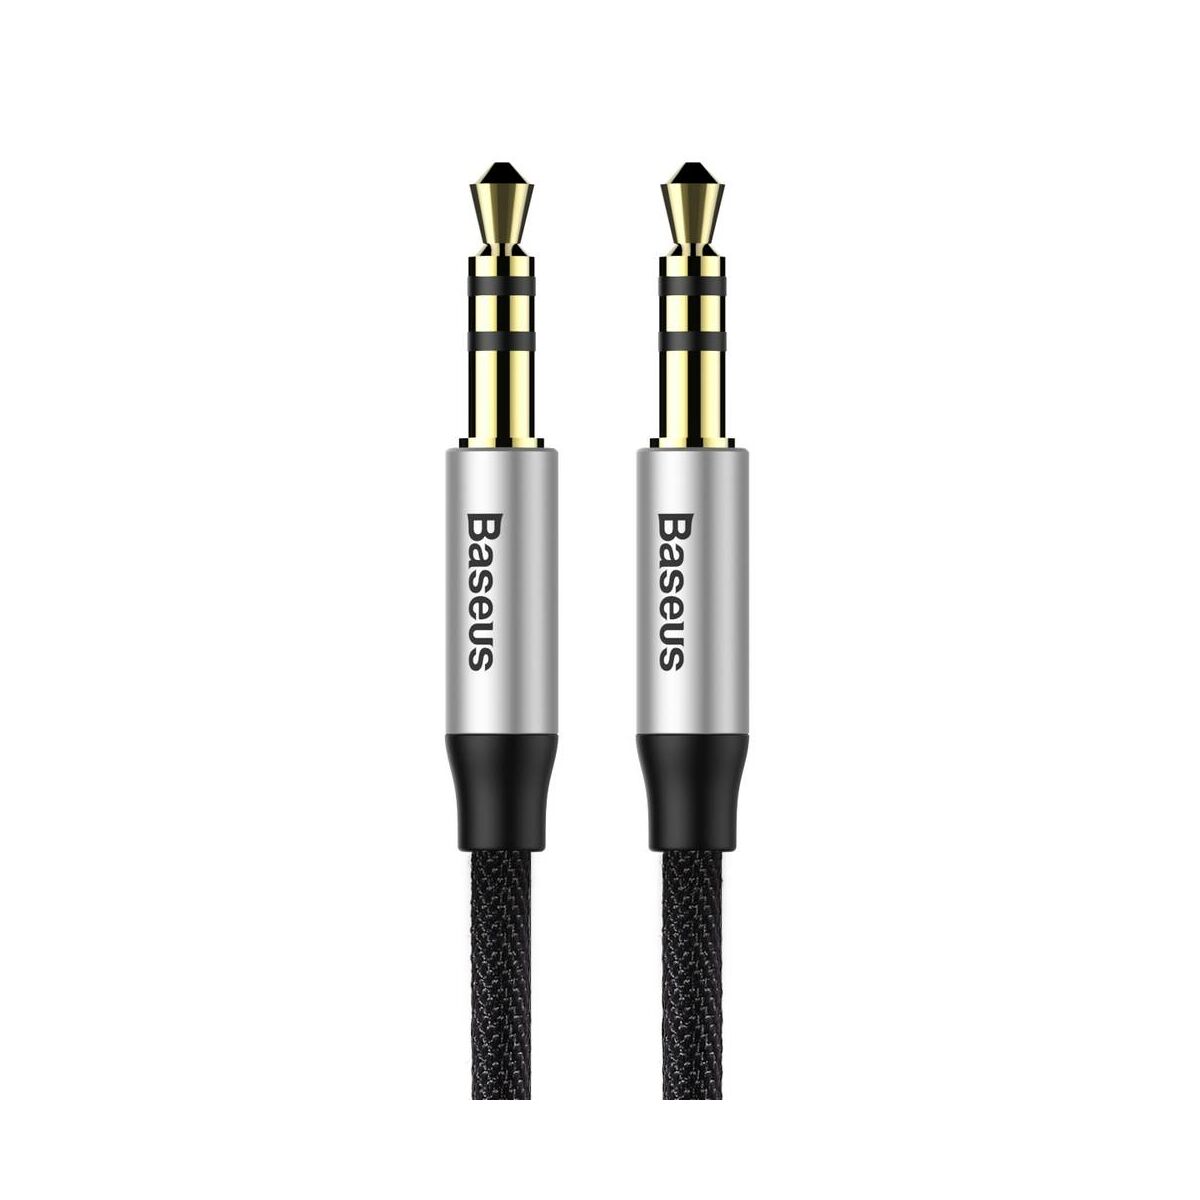 Kép 2/9 - Baseus Audio kábel, Yiven M30 AUX 1m, ezüst/fekete (CAM30-BS1)